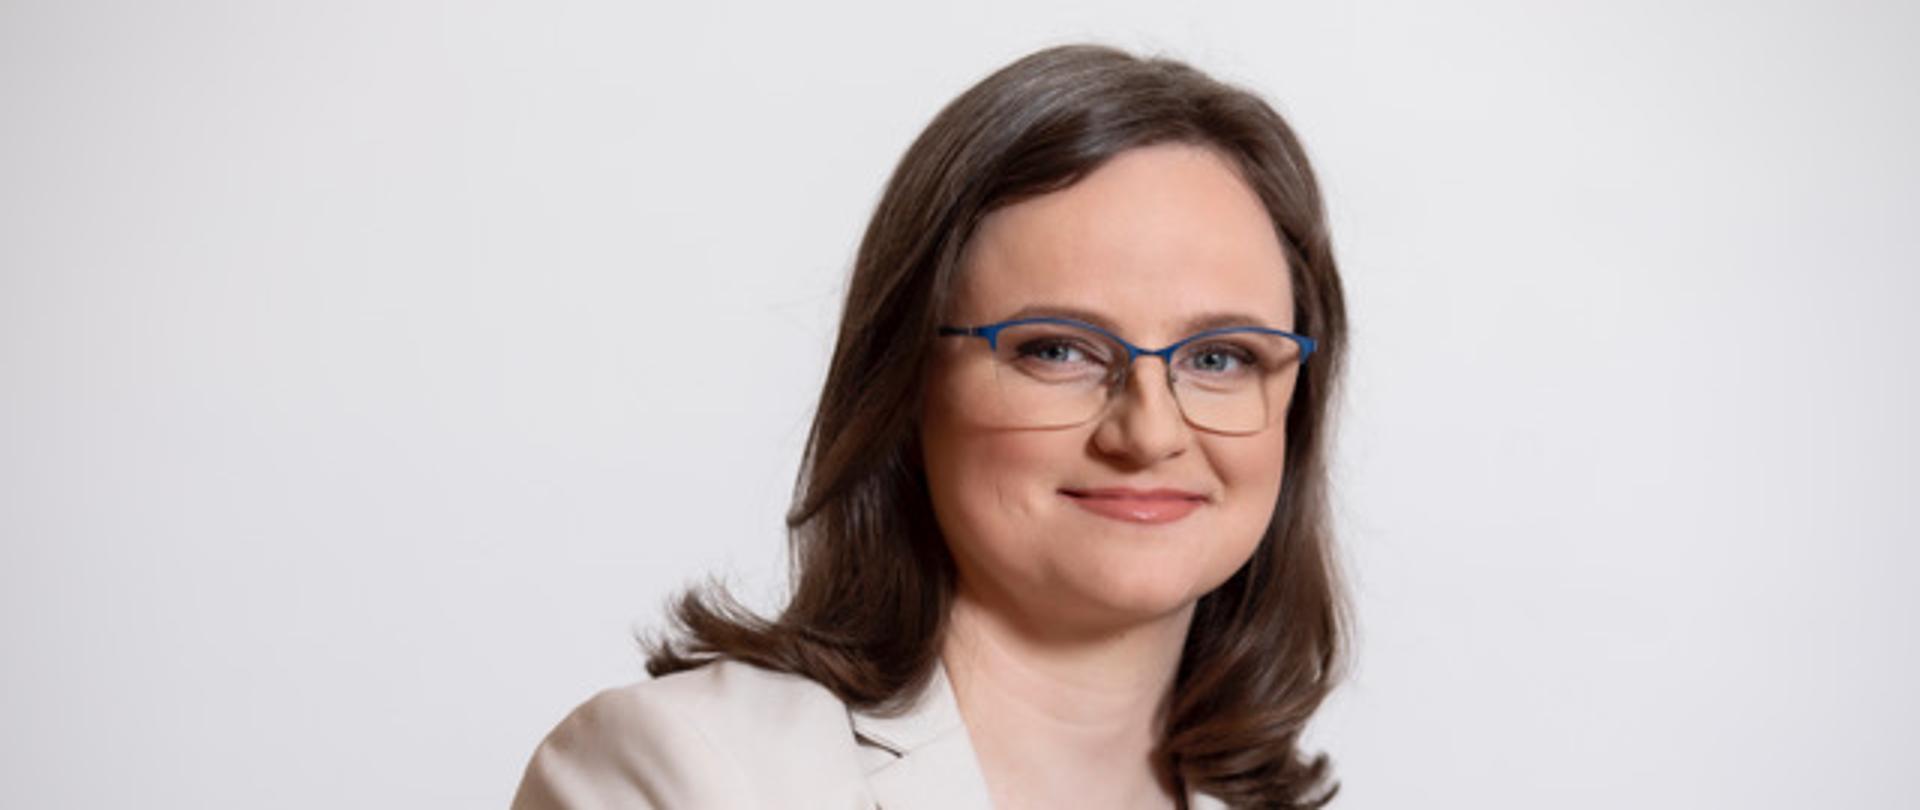 Anna Chałupa - Podsekretarz Stanu, Zastępca Szefa Krajowej Administracji Skarbowej